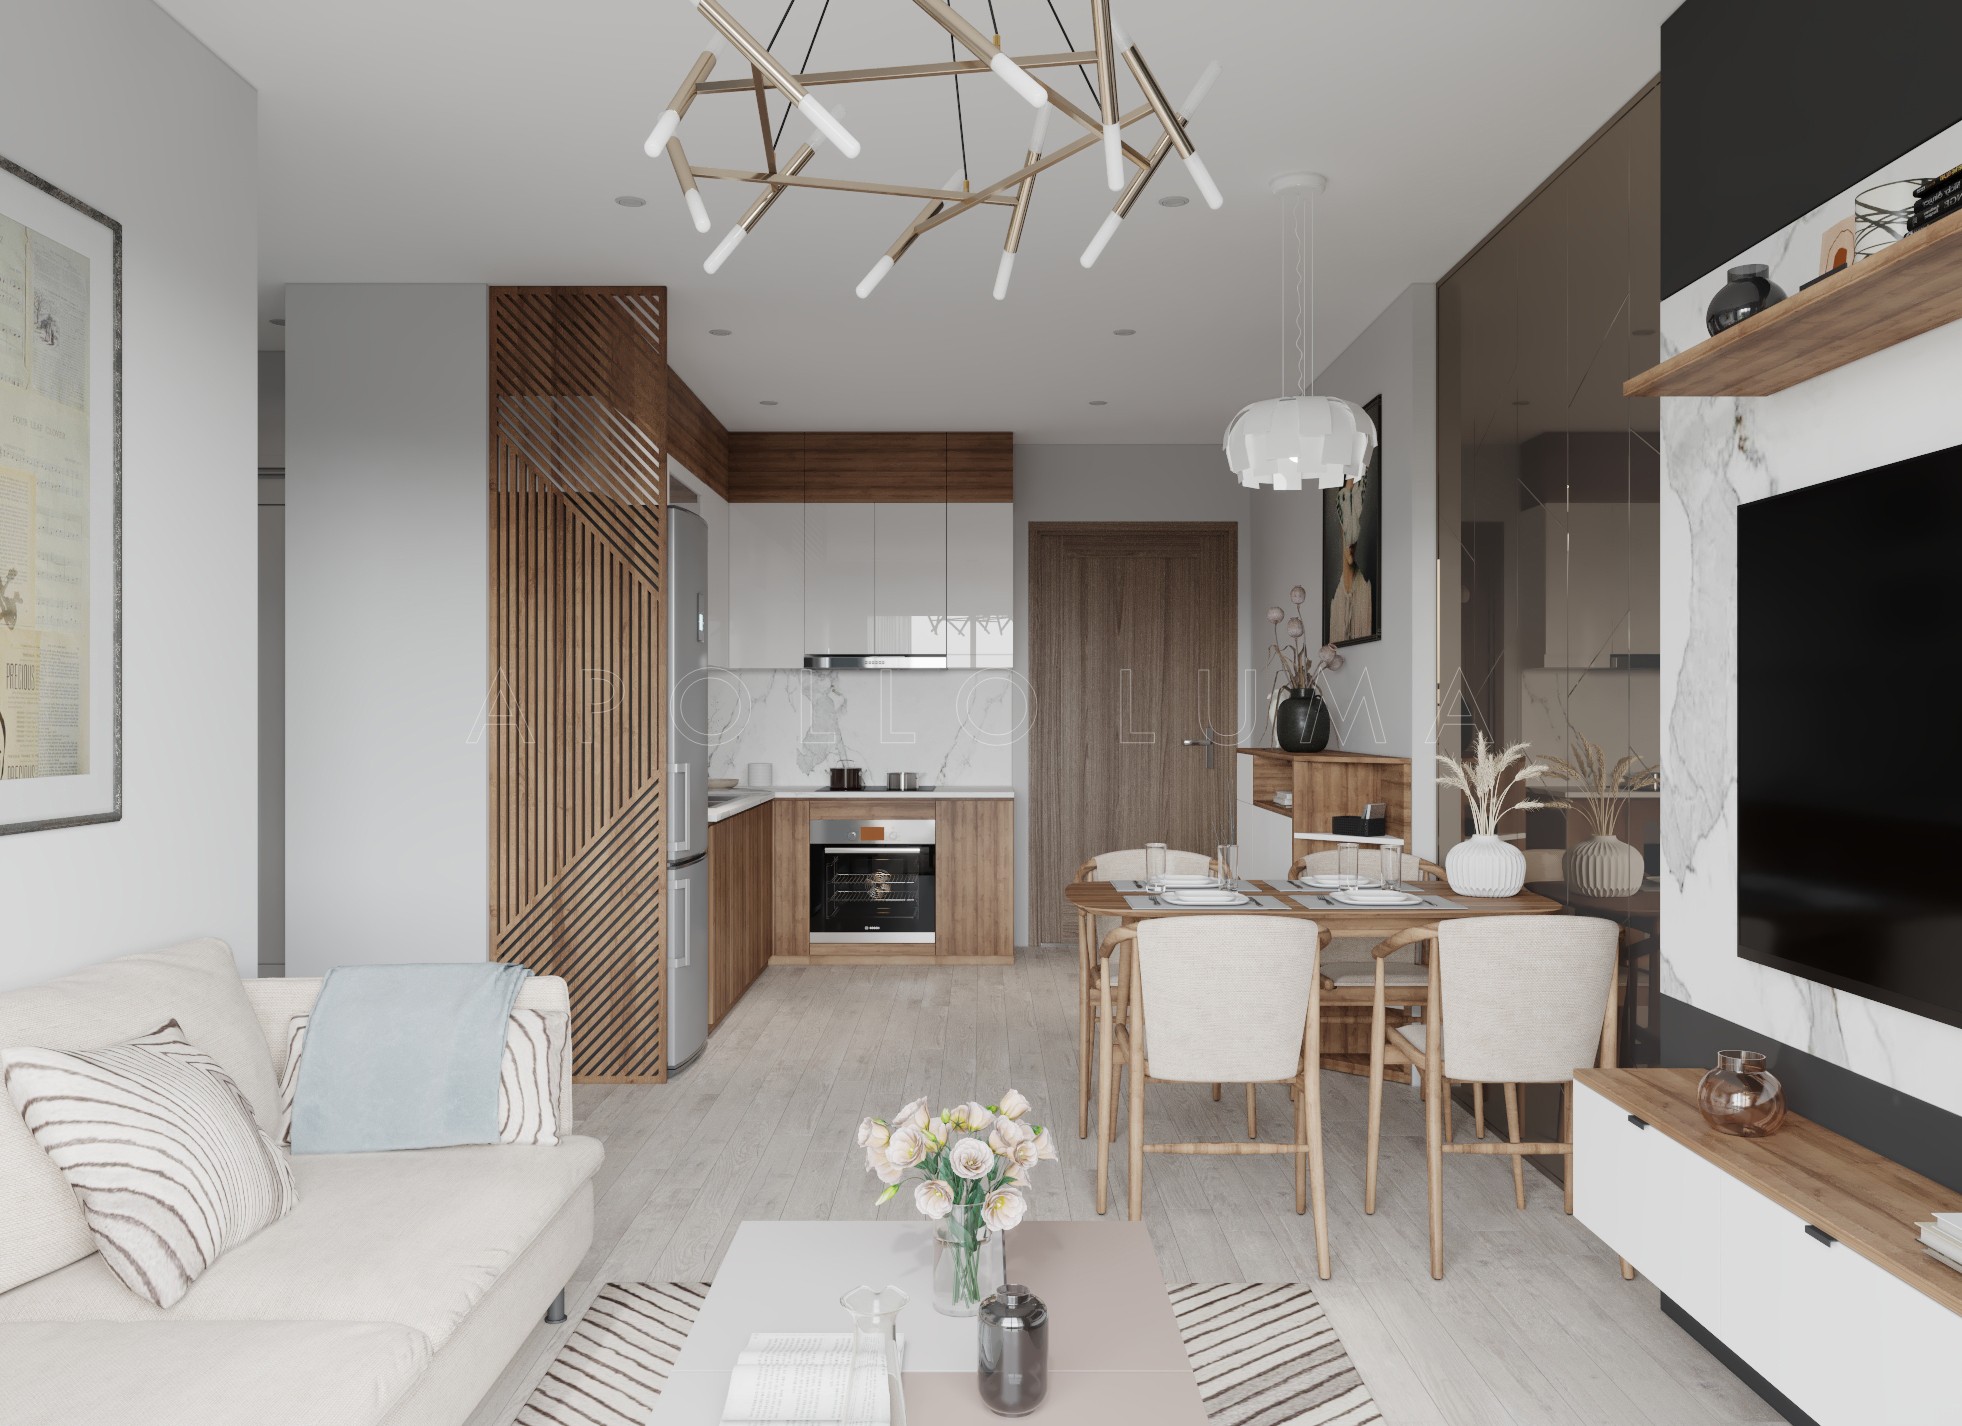 Thiết kế nội thất căn hộ 2PN+1 Vinhomes Smart City Tây Mỗ sang trọng